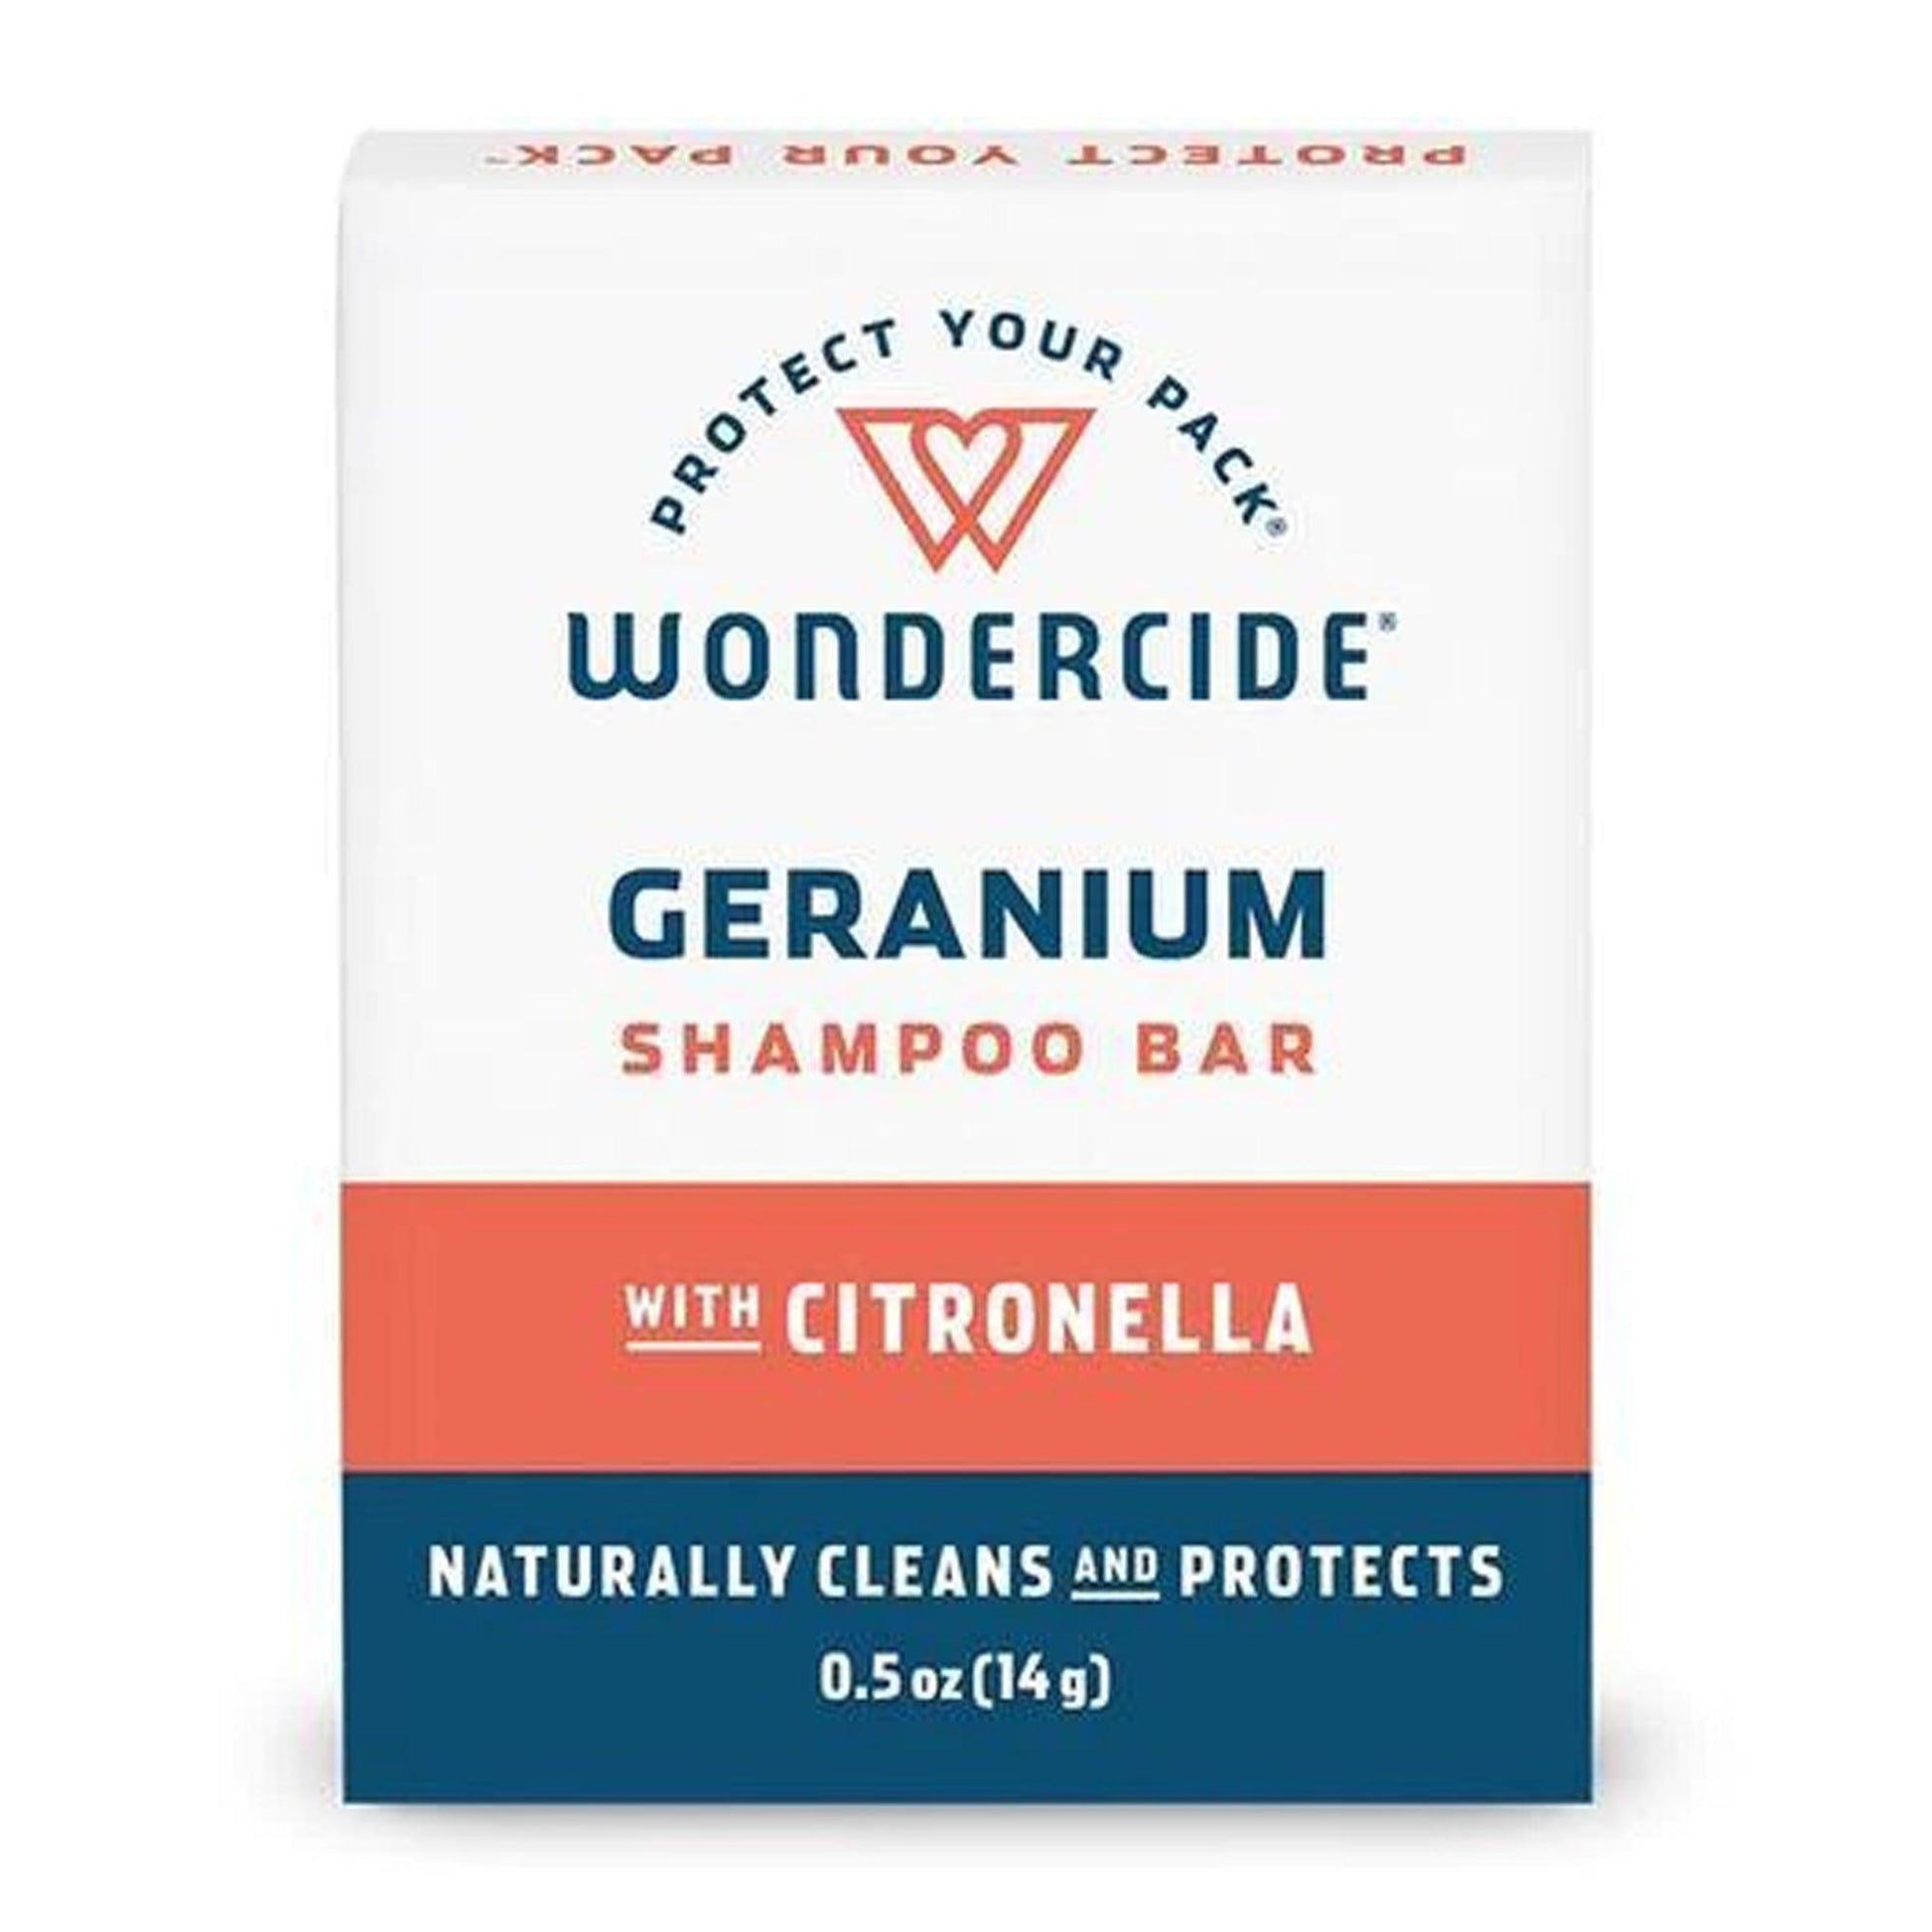 Wondercide Geranium Shampoo Bar-.5 oz